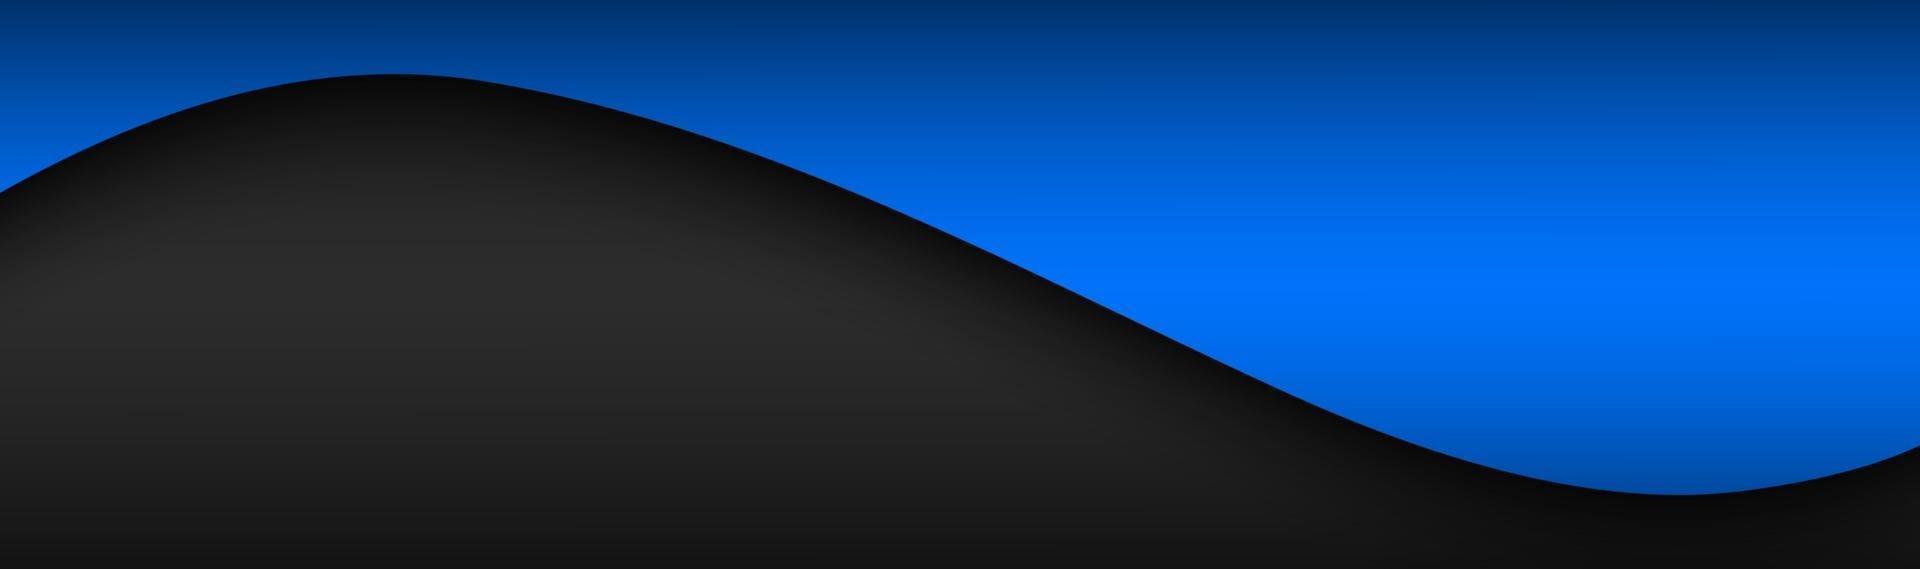 abstrakter schwarzer und blauer Wellenvektorkopf mit Leerzeichen für Ihren modernen Firmendesignfahnenvektorhintergrundillustration des Textes vektor